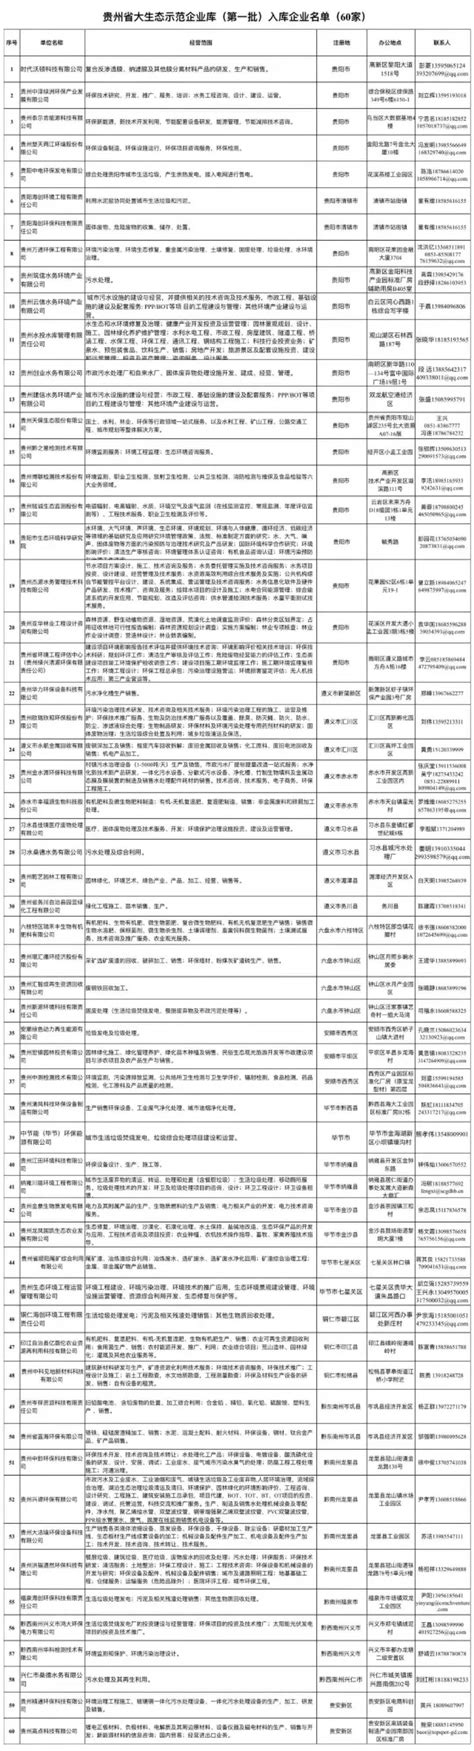 贵州检测_贵州中测检测技术有限公司